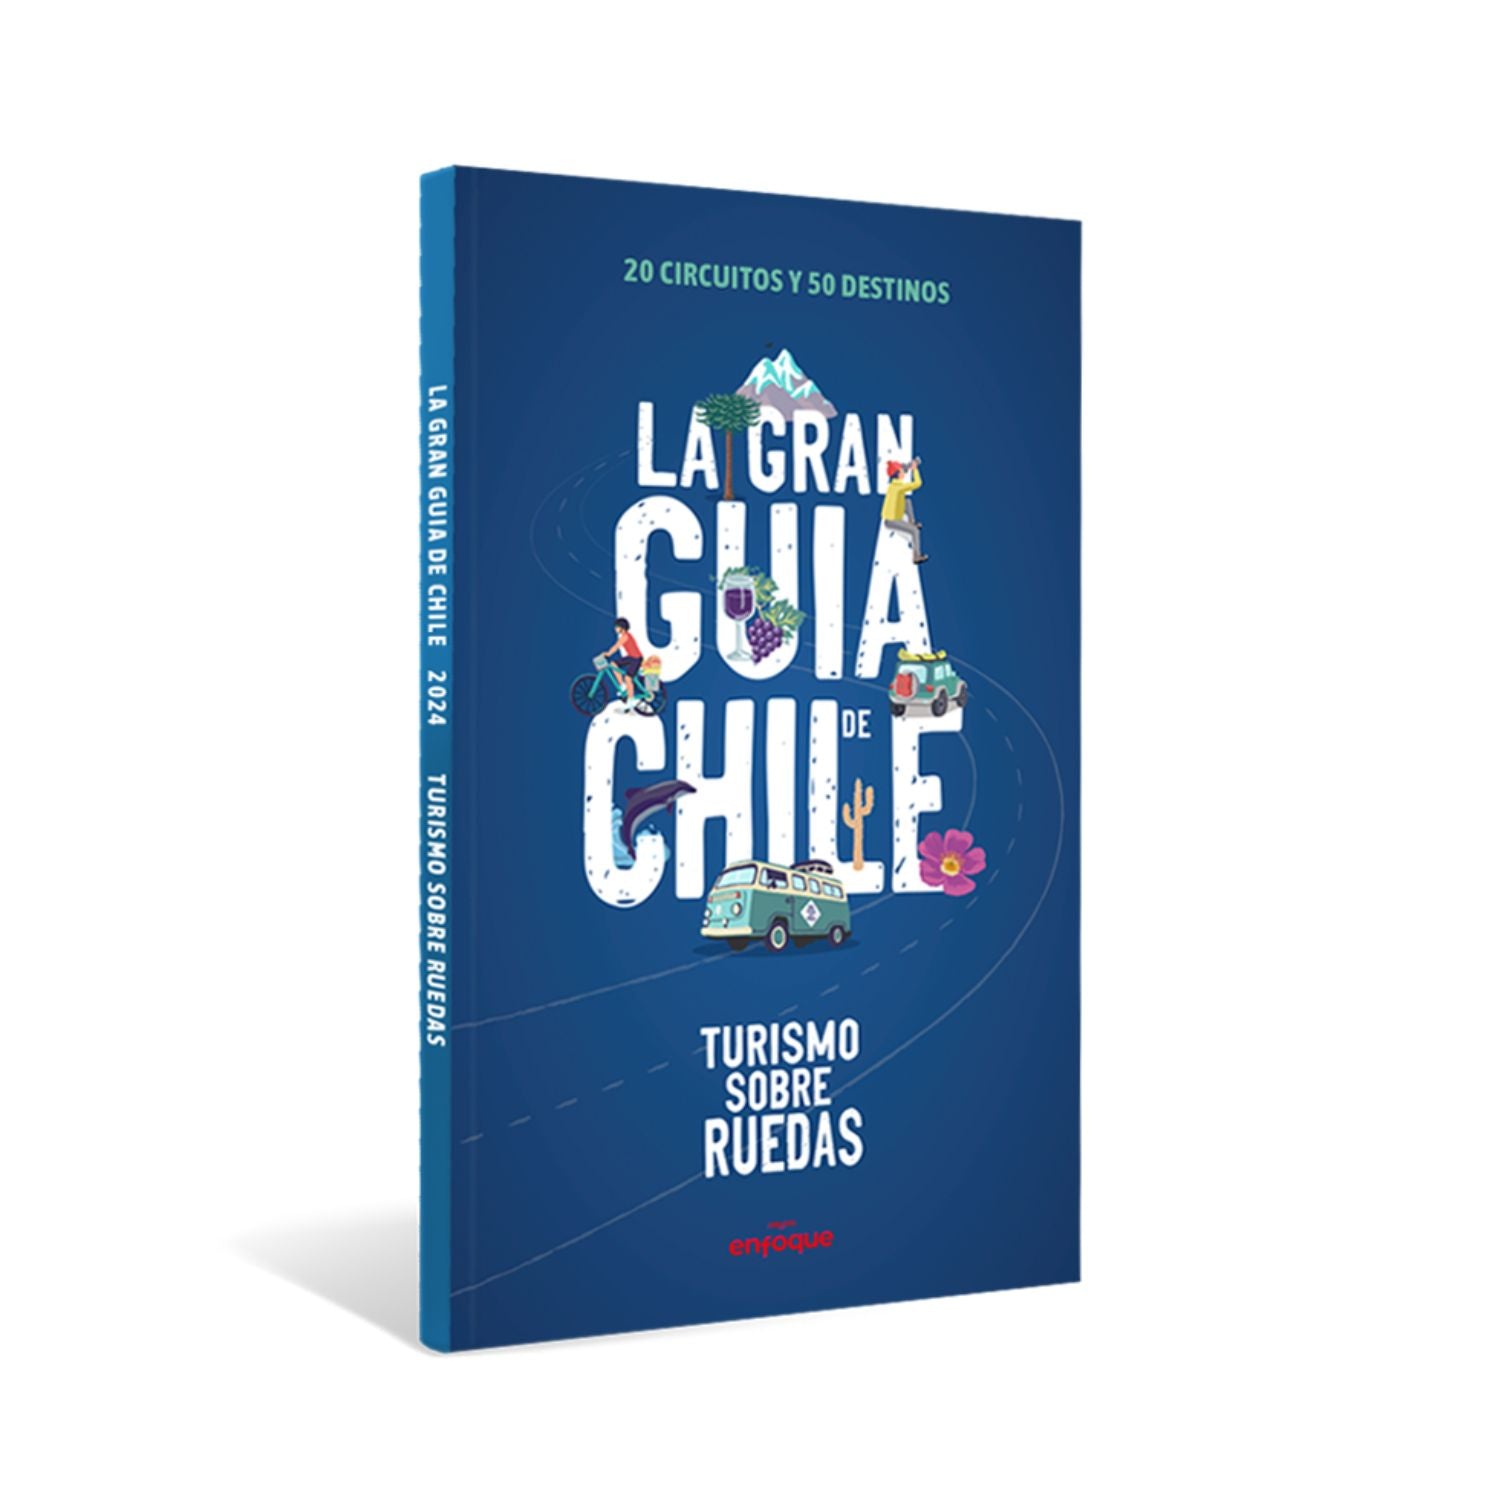 La gran guía de Chile - Turismo sobre ruedas